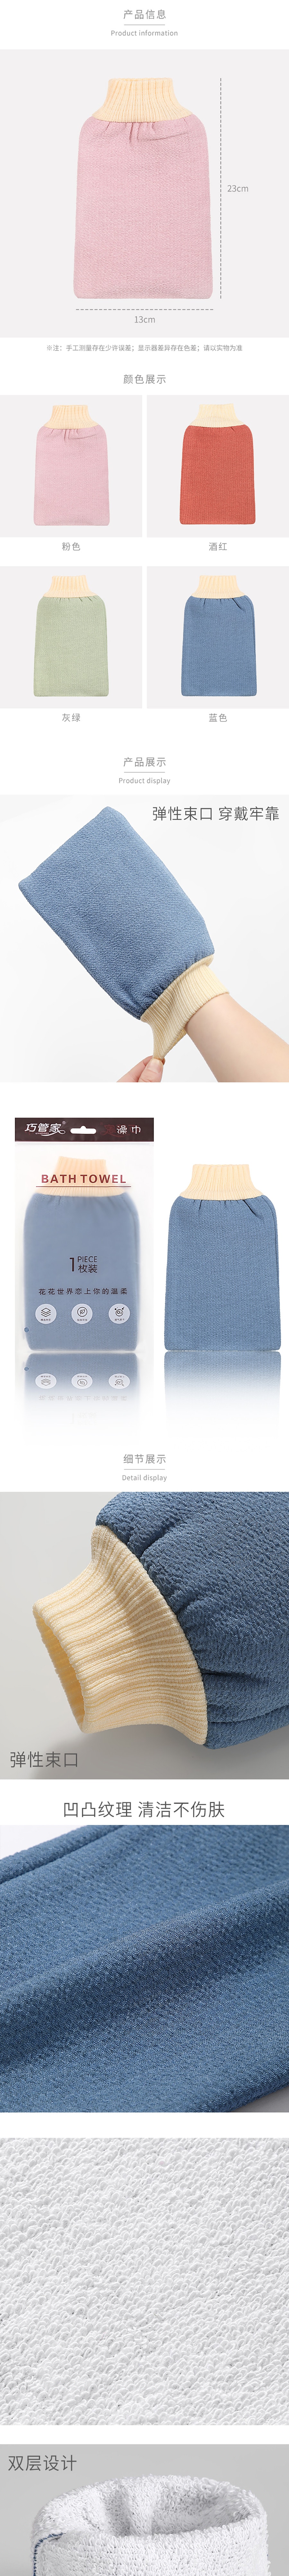 YM雨盟 傳統搓澡巾手套 澡堂搓泥專用 單一入#顏色隨機